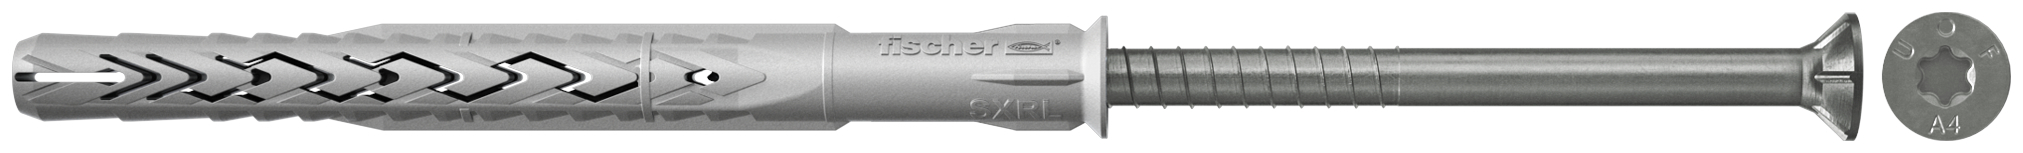 fischer Tasselli prolungati SXRL 10X120 T A4 (1 Pz.) Tassello prolungato in nylon con marcatura CE con vite premontata in acciaio inox A4, T.S.P. impronta torx fie2377